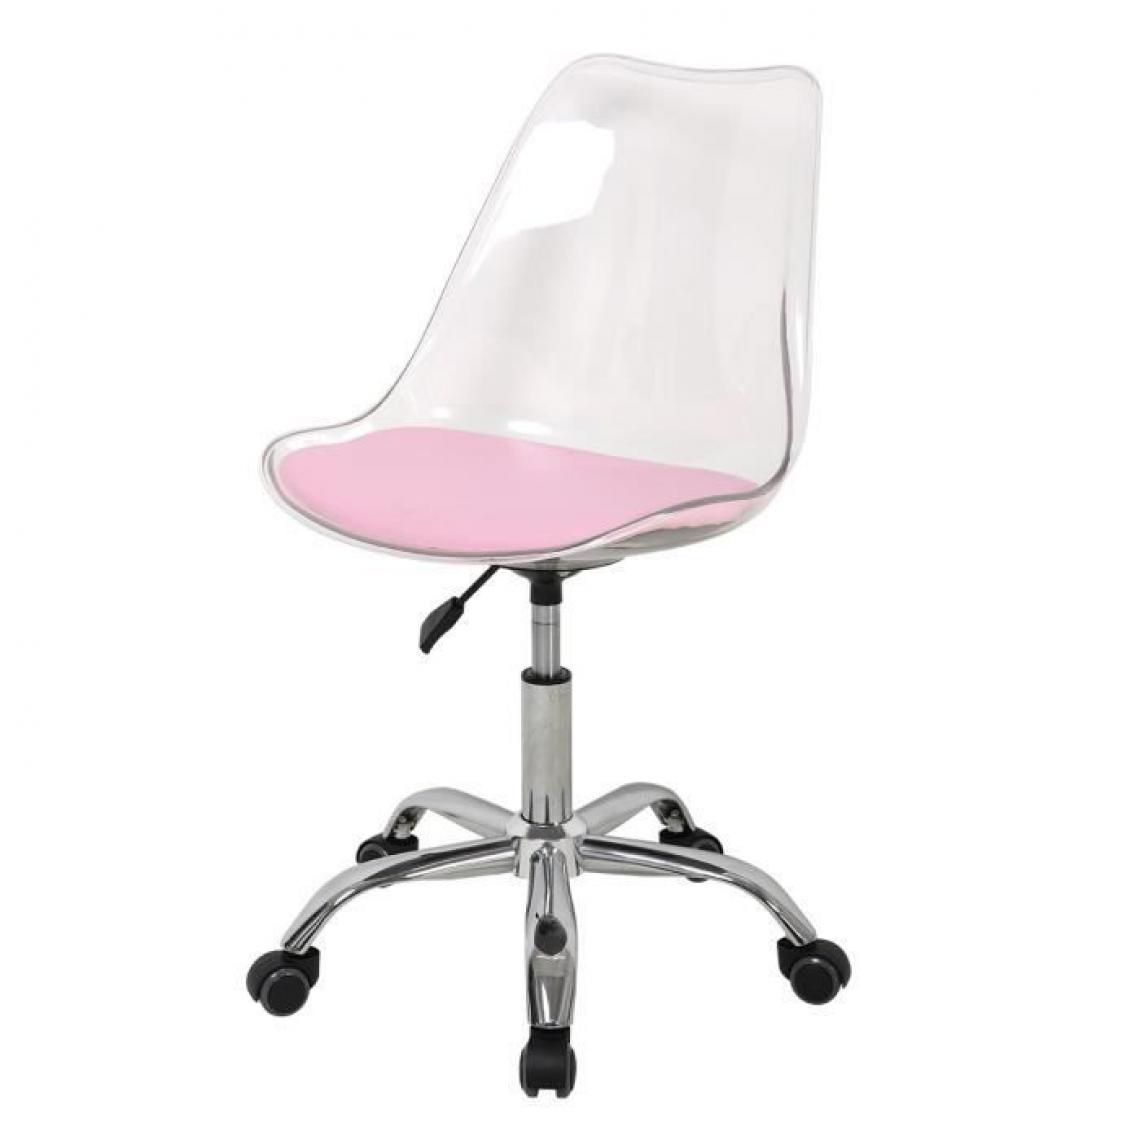 Cstore - RONNY - chaise de bureau coque transparente et coussin rose l 52xp 52xh 88 cm - Chaises